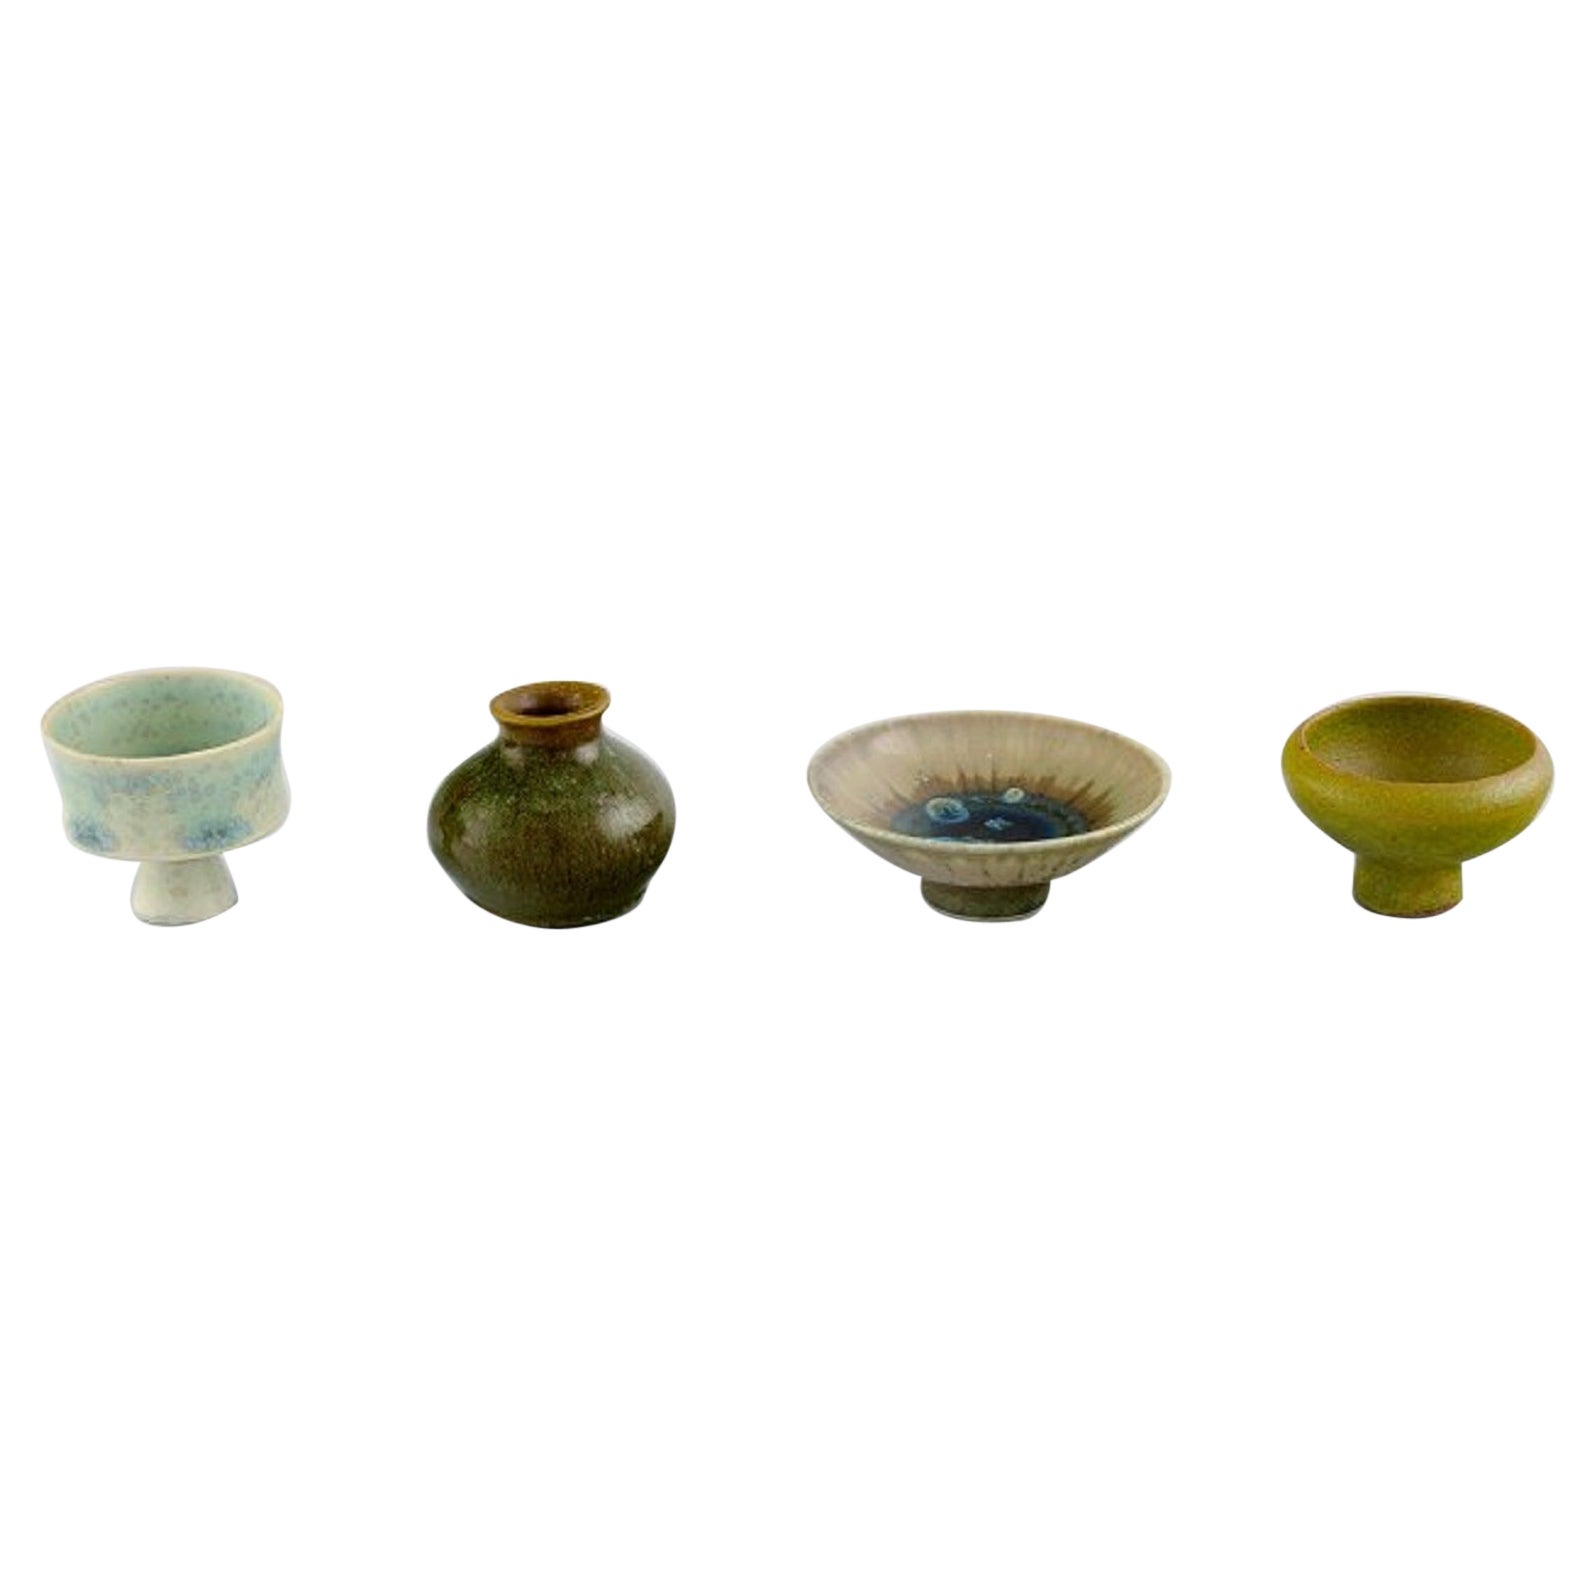 Quatre vases miniatures uniques en grès émaillé de Studio Ceramics suédois